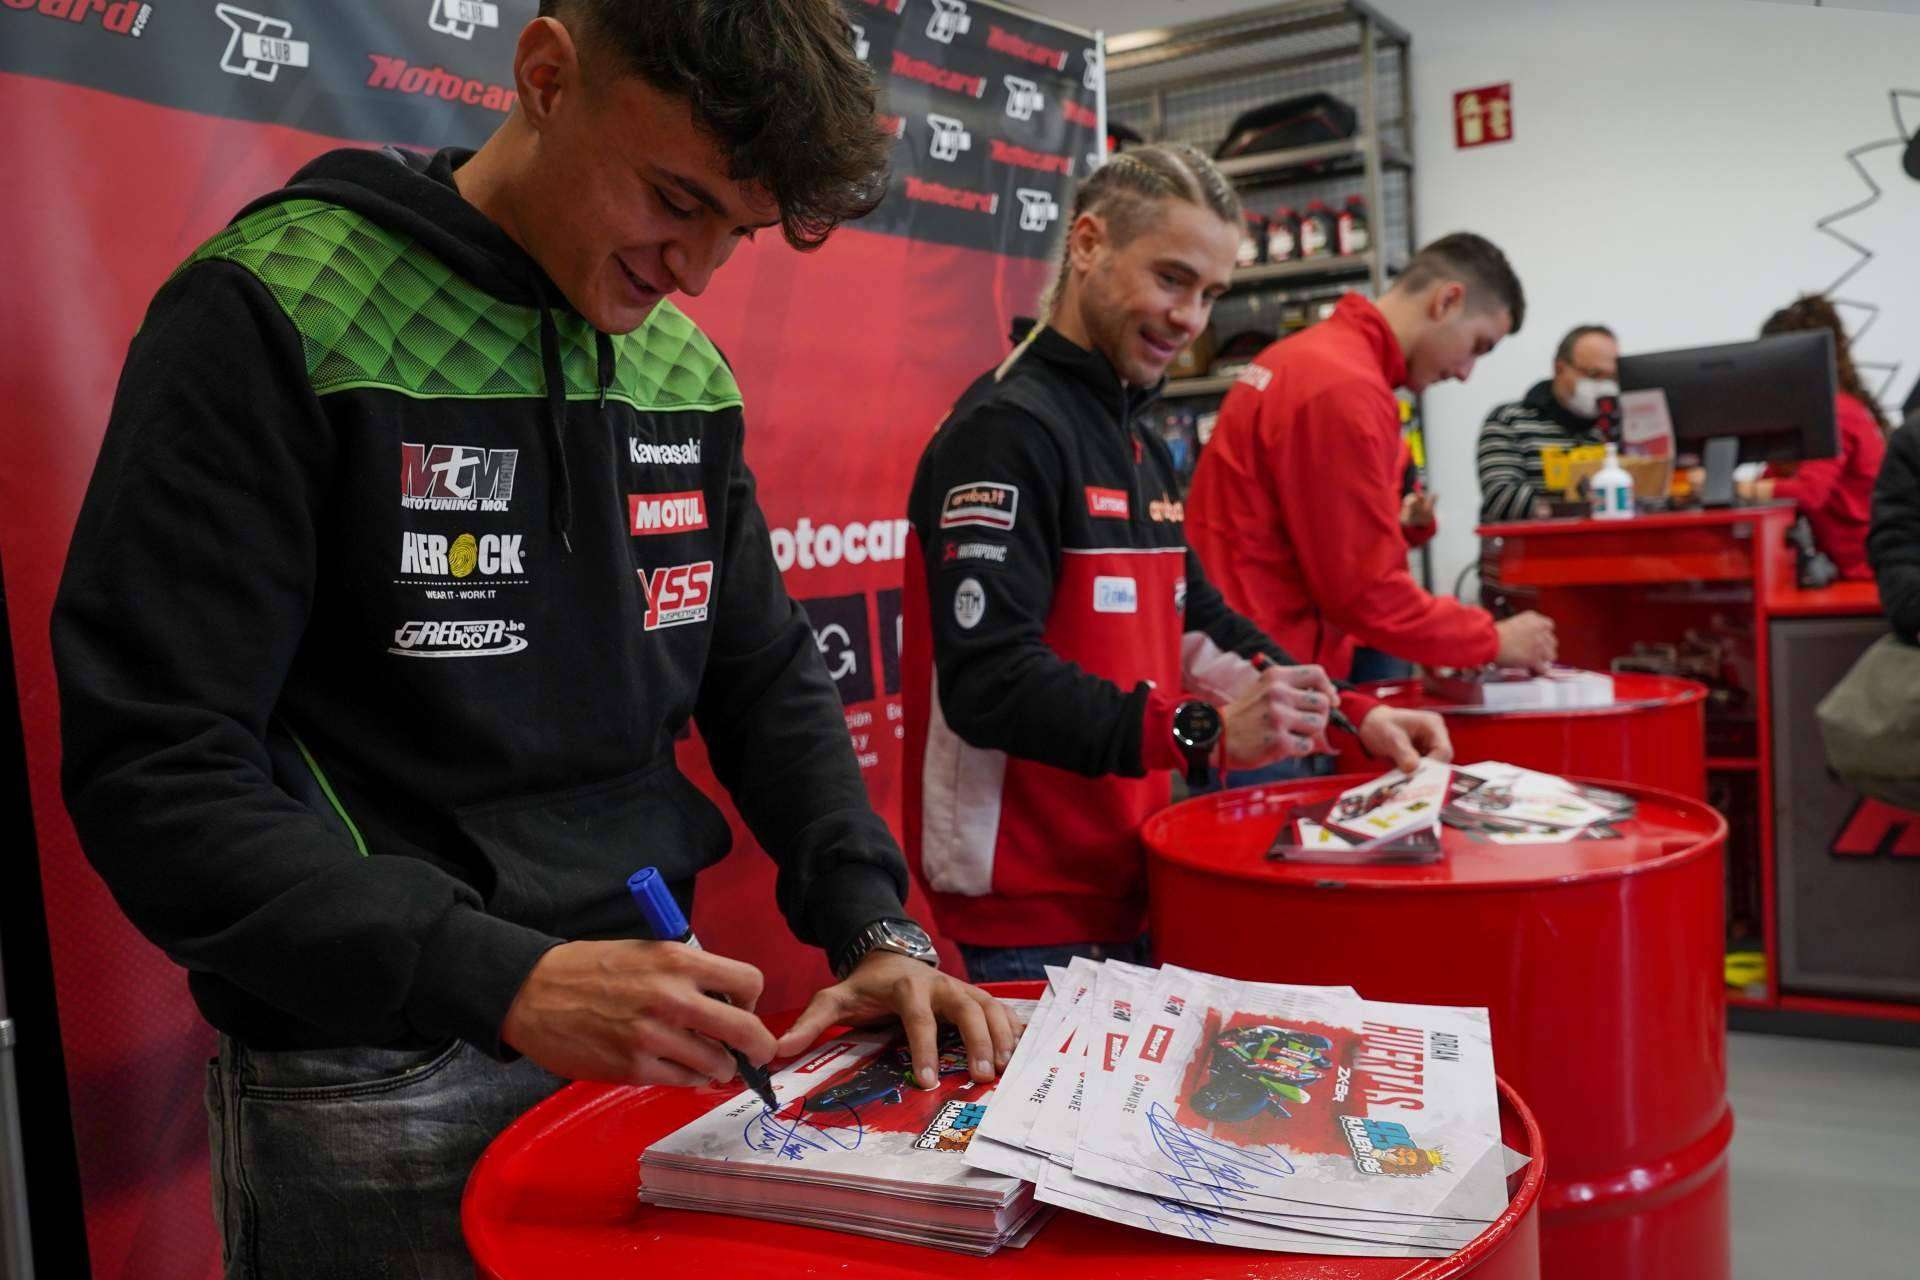 Los pilotos Álvaro Bautista, Iker Lecuona y Adrián Huertas han visitado la tienda de Motocard en Zaragoza